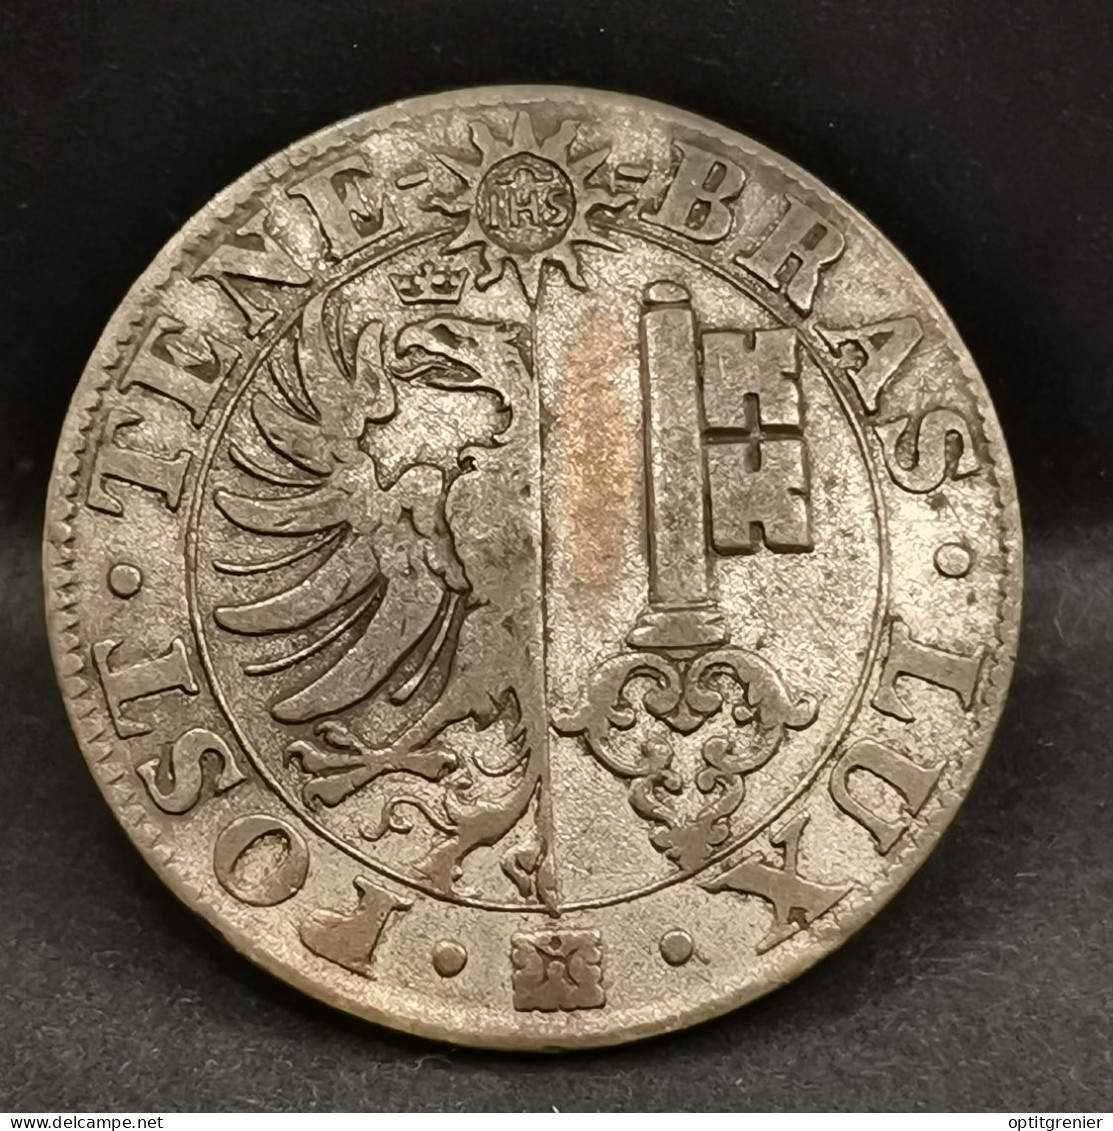 25 CENTIMES 1839 BILLON ARGENT CANTON DE GENEVE SUISSE / SWITZERLAND - Cantonal Coins